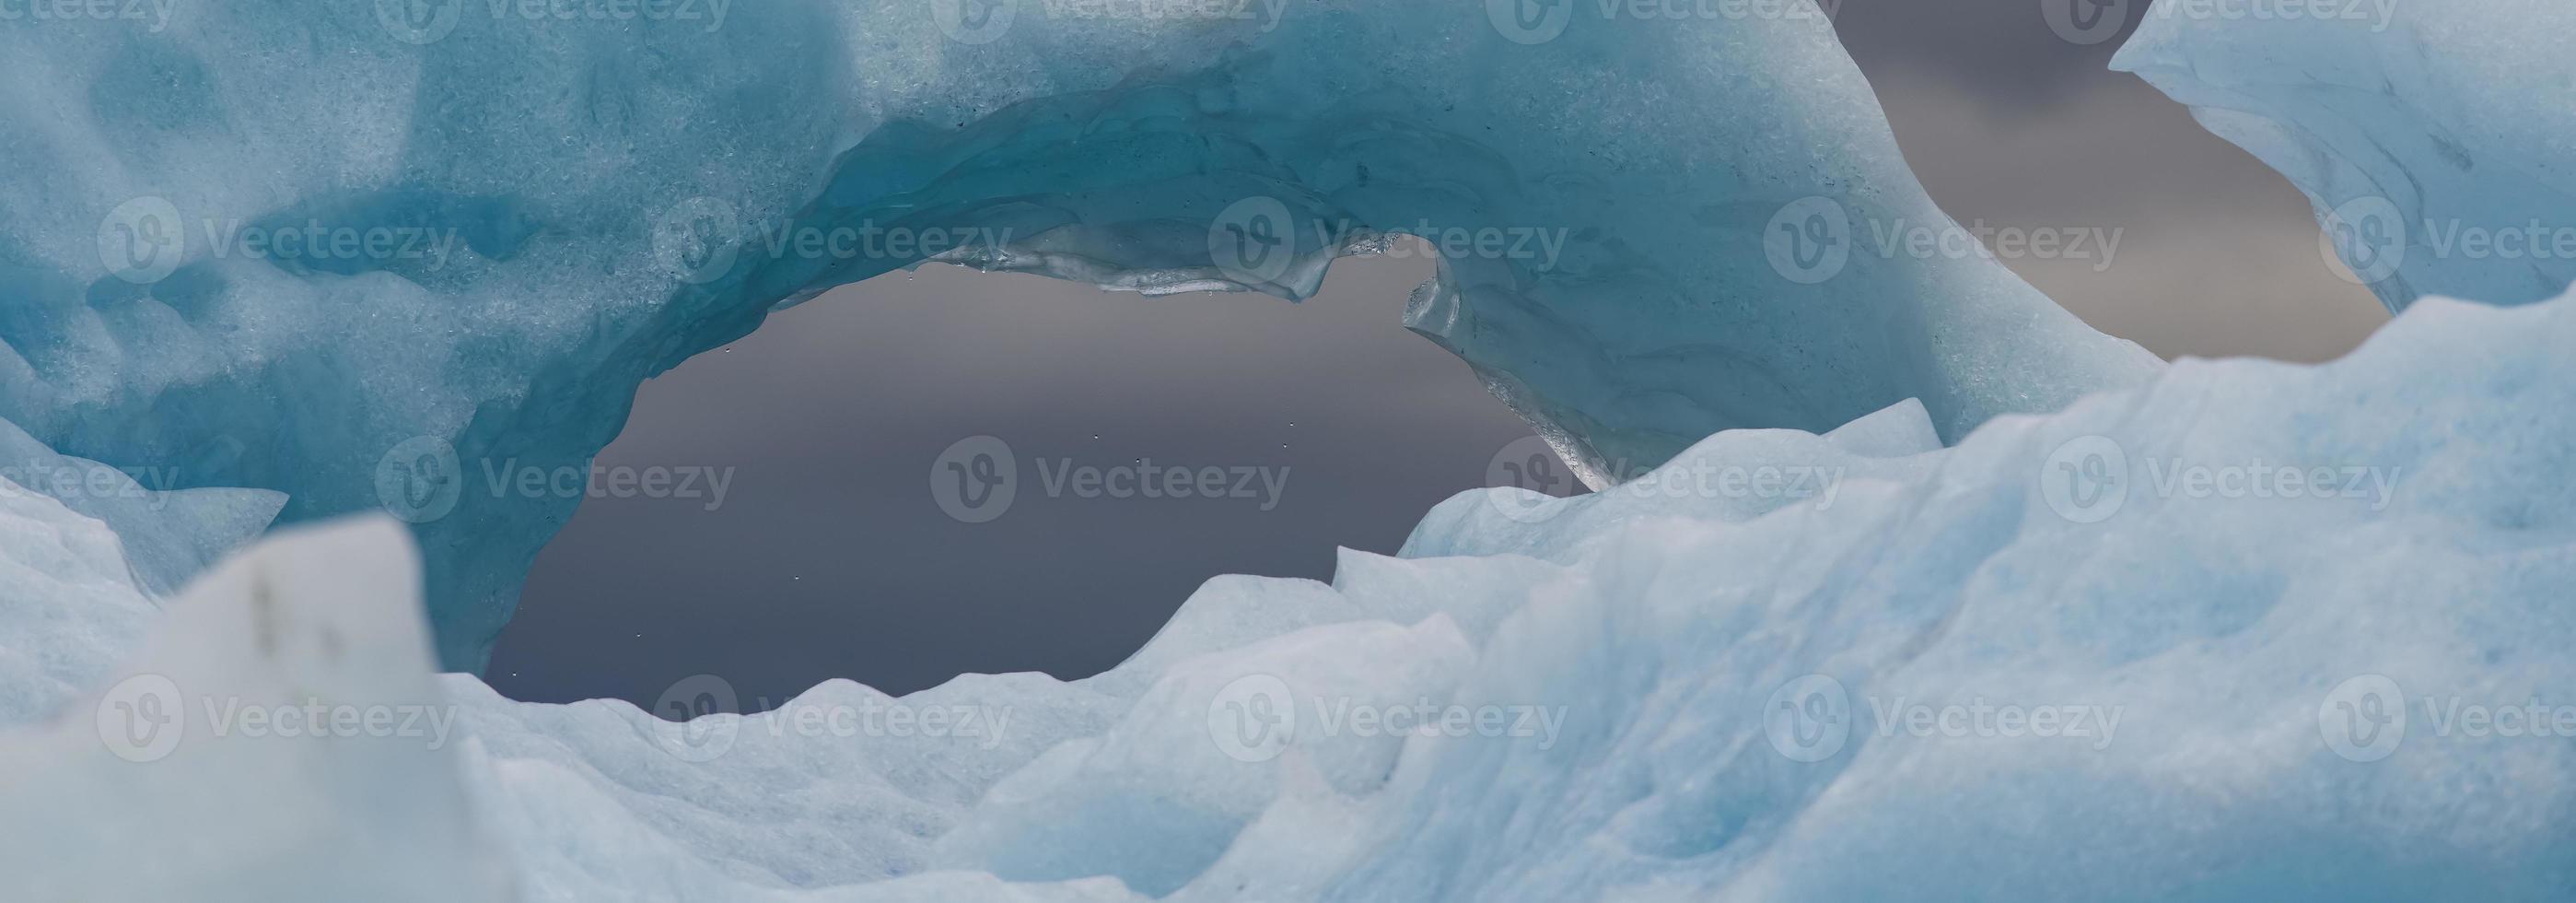 ijsbergpano in alaska foto